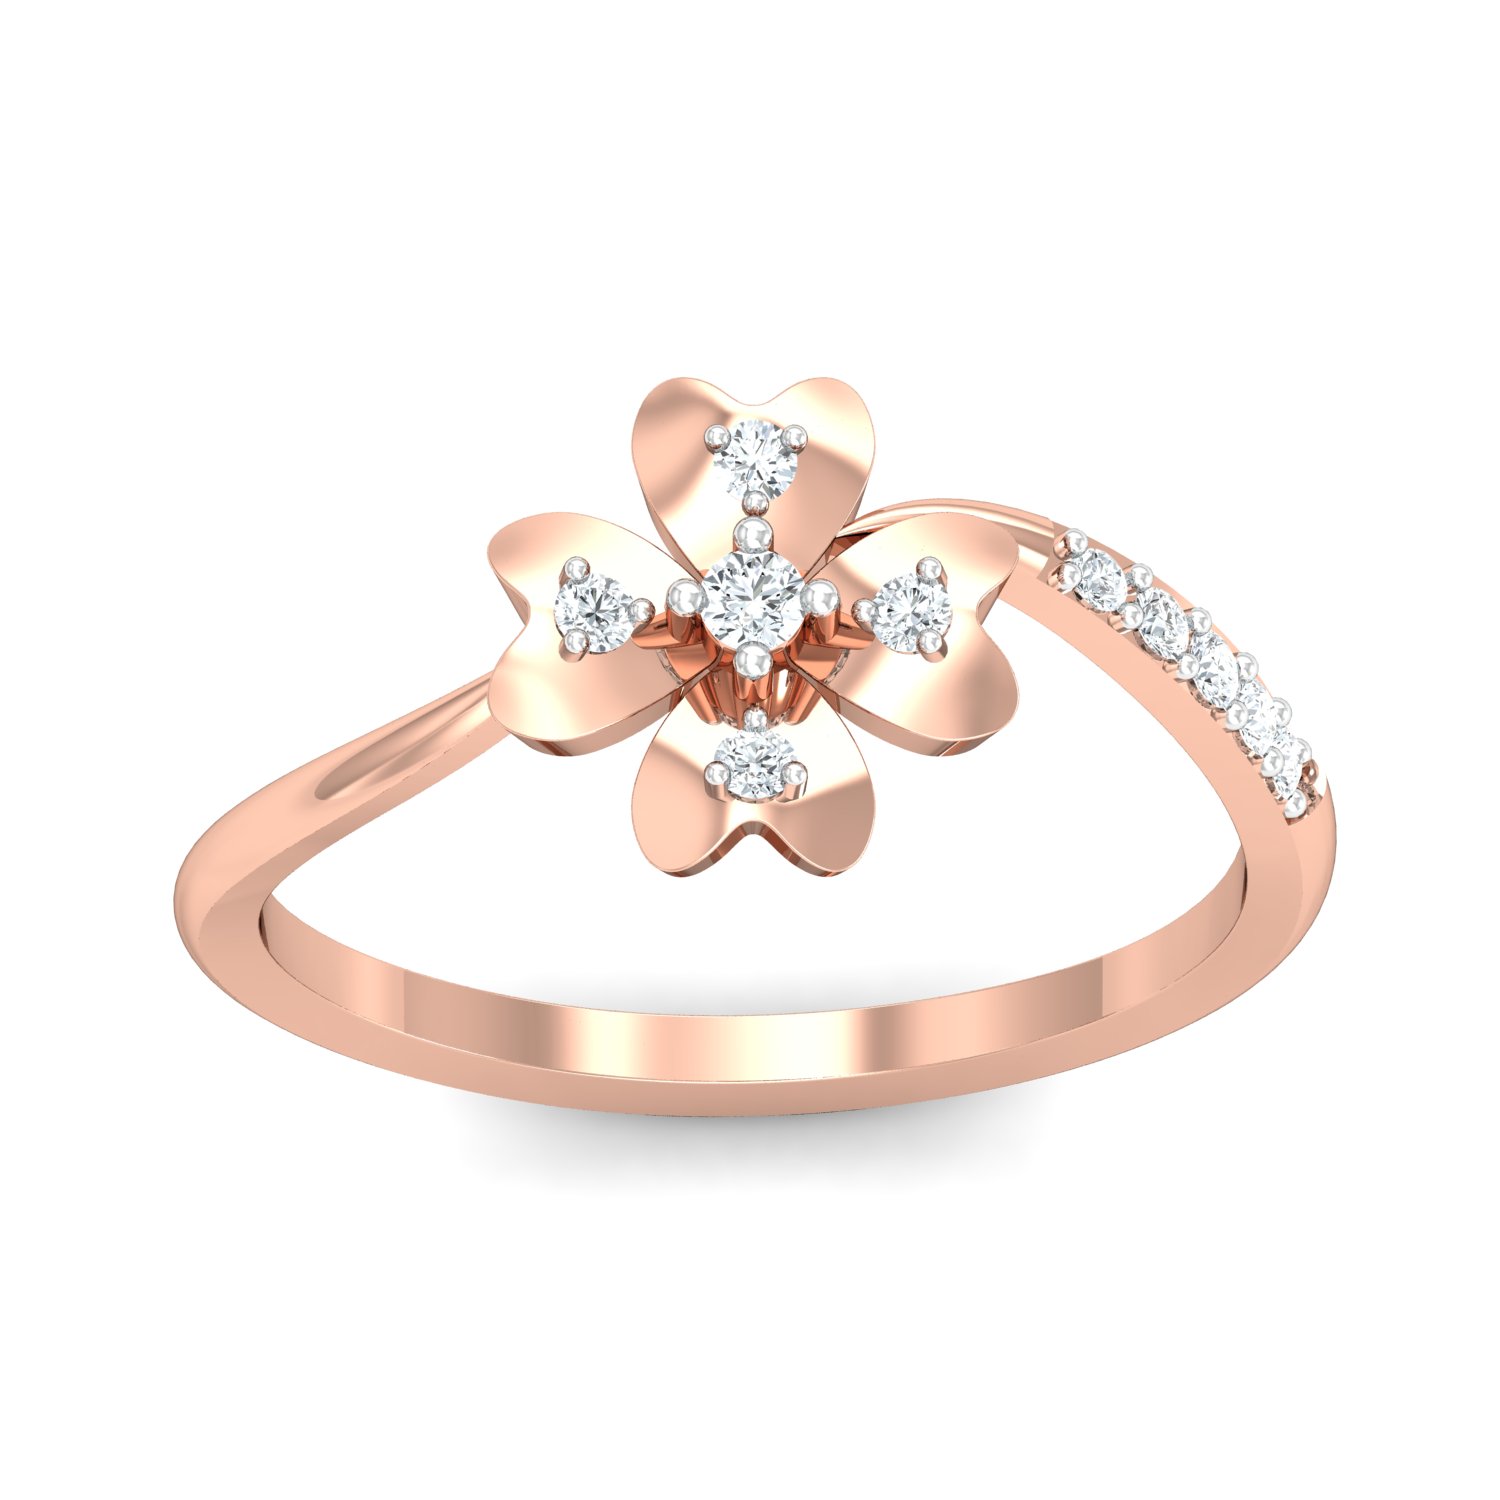 Designer 14K Rose Gold Ladies Diamond Cocktail Ring 1 carat by Luxurman  803025